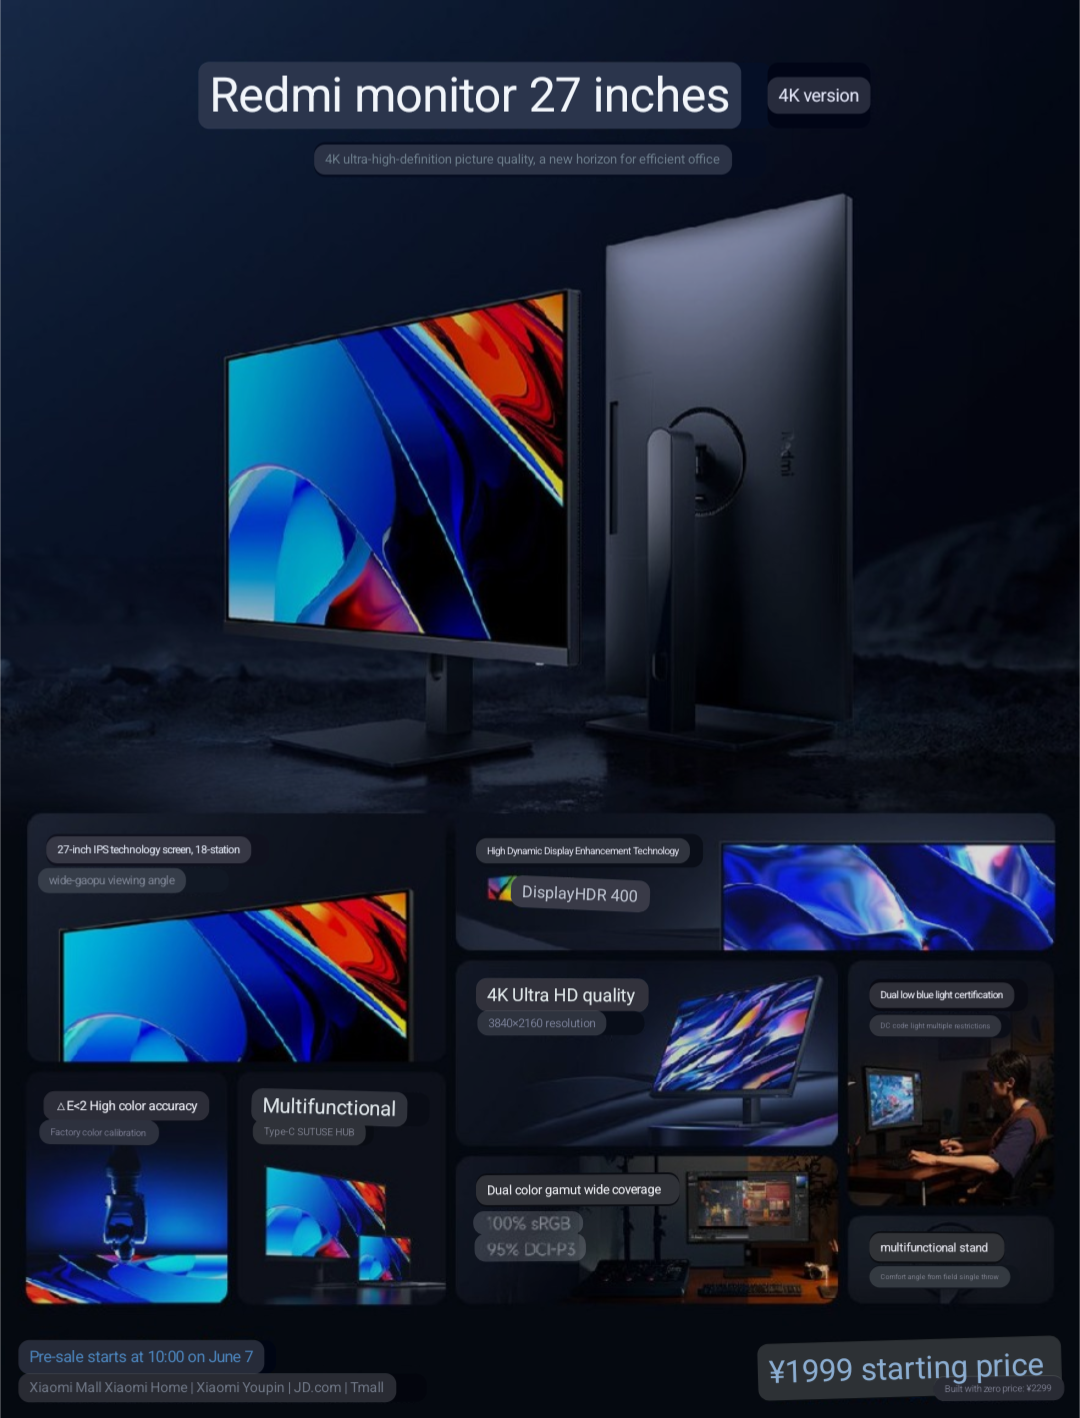 Redmi introduces 2 monitors